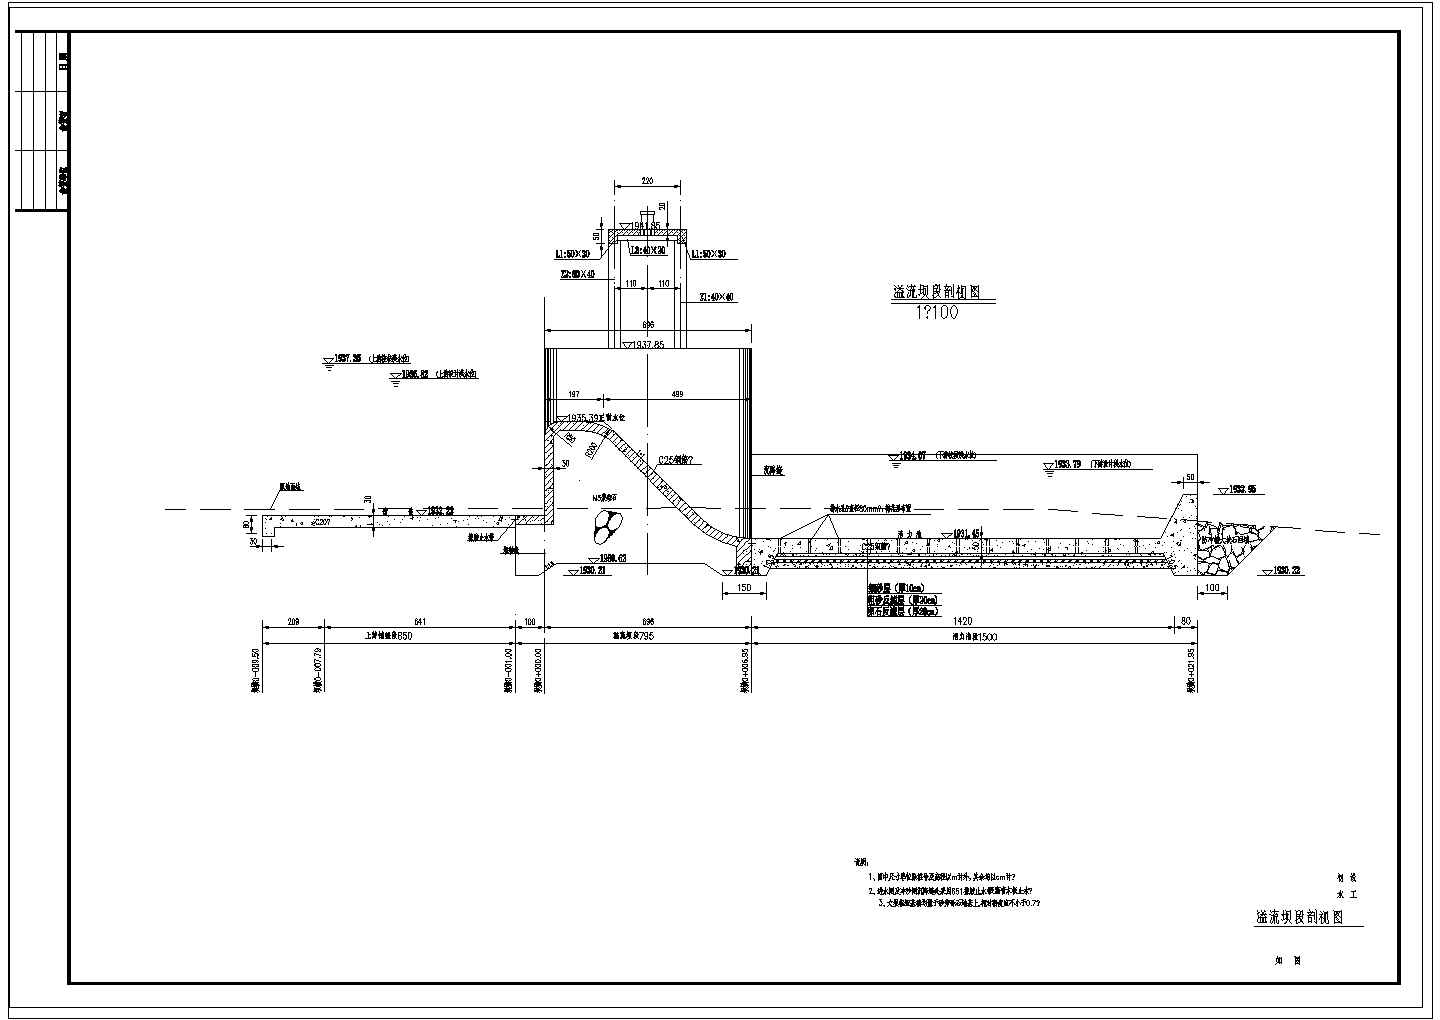 【四川】水电站枢纽工程初步设计施工图(引水隧洞 压力前池 厂房)